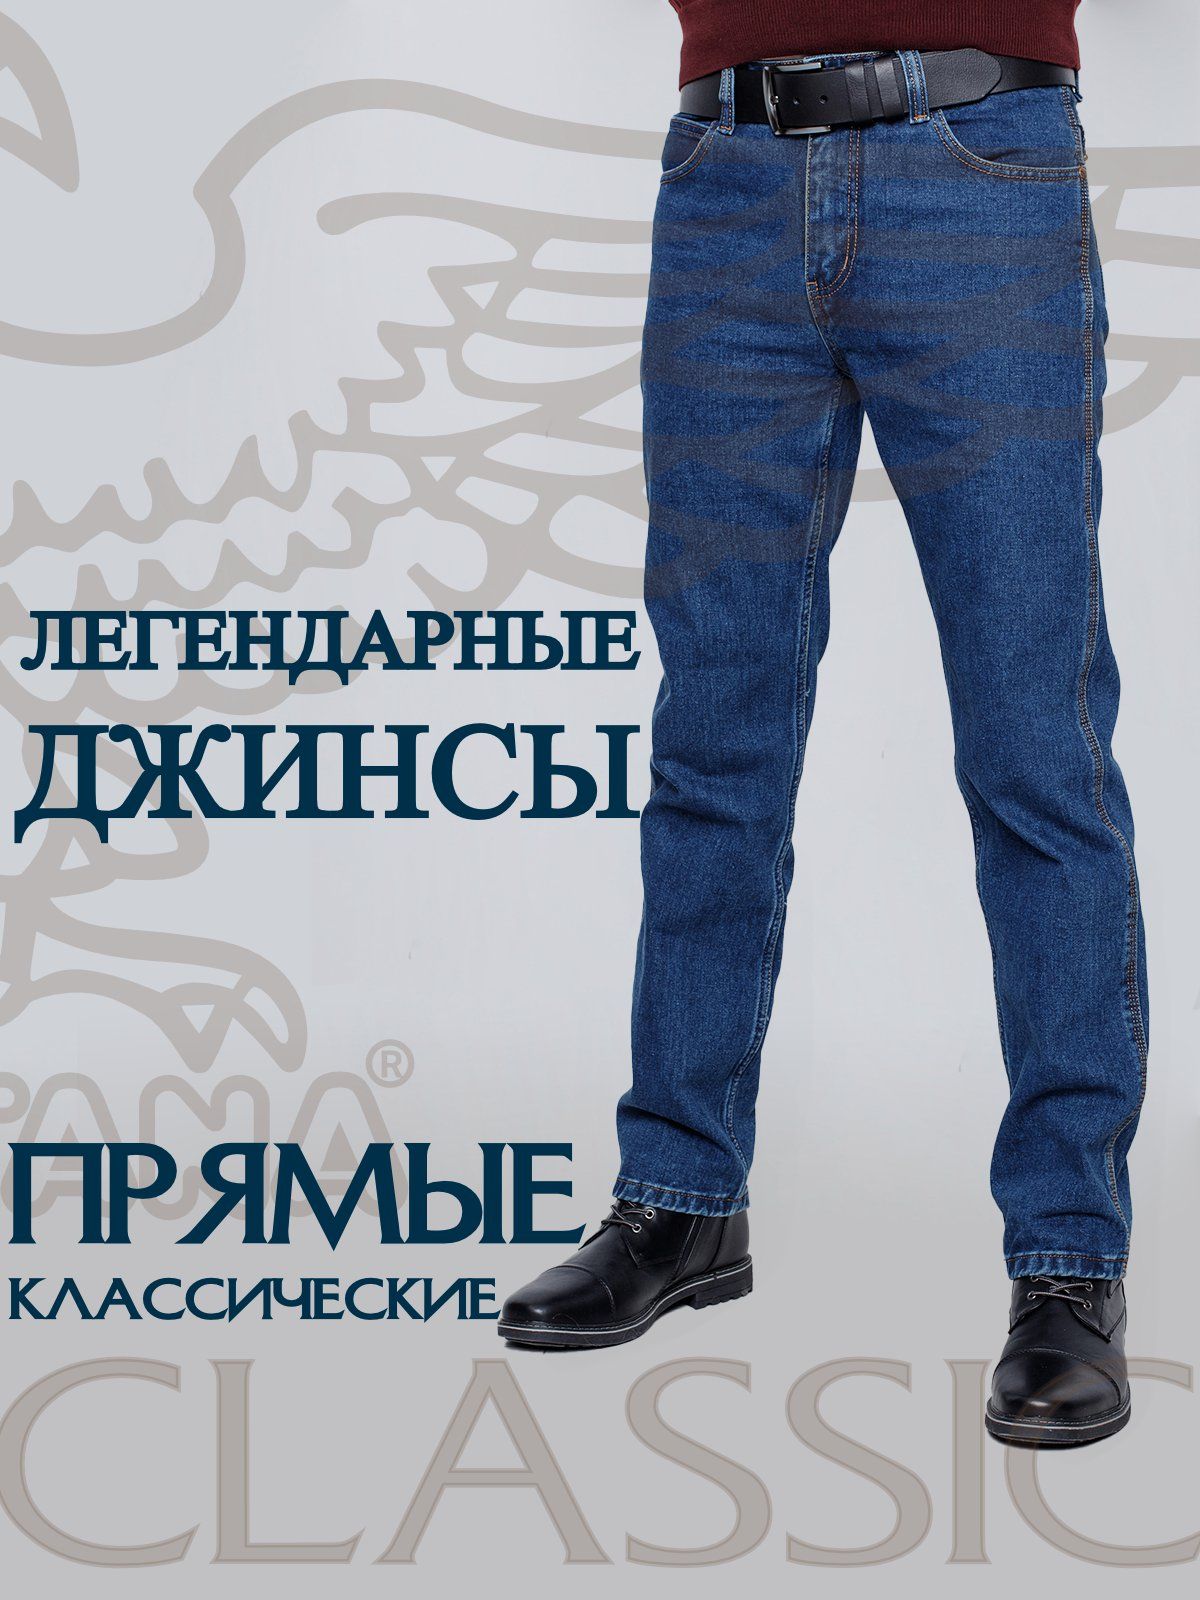 Обработка боковых карманов на джинсах (Шитье и крой) – Журнал Вдохновение Рукодельницы